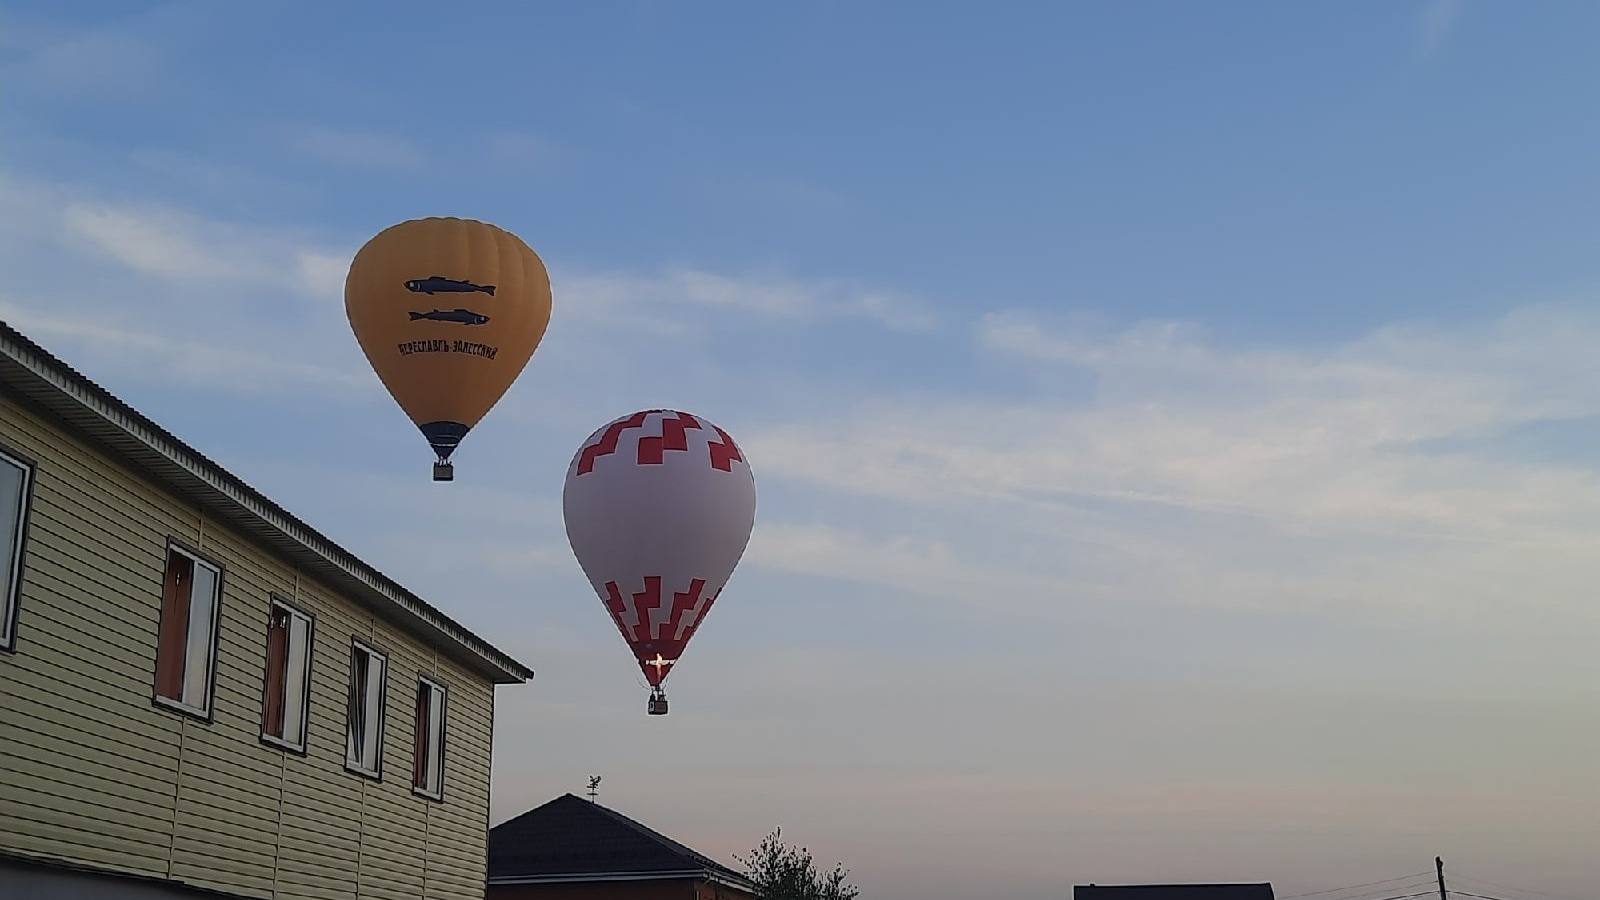 Воздушные шары вновь поднимутся в небо над Нижним Новгородом 25 июня